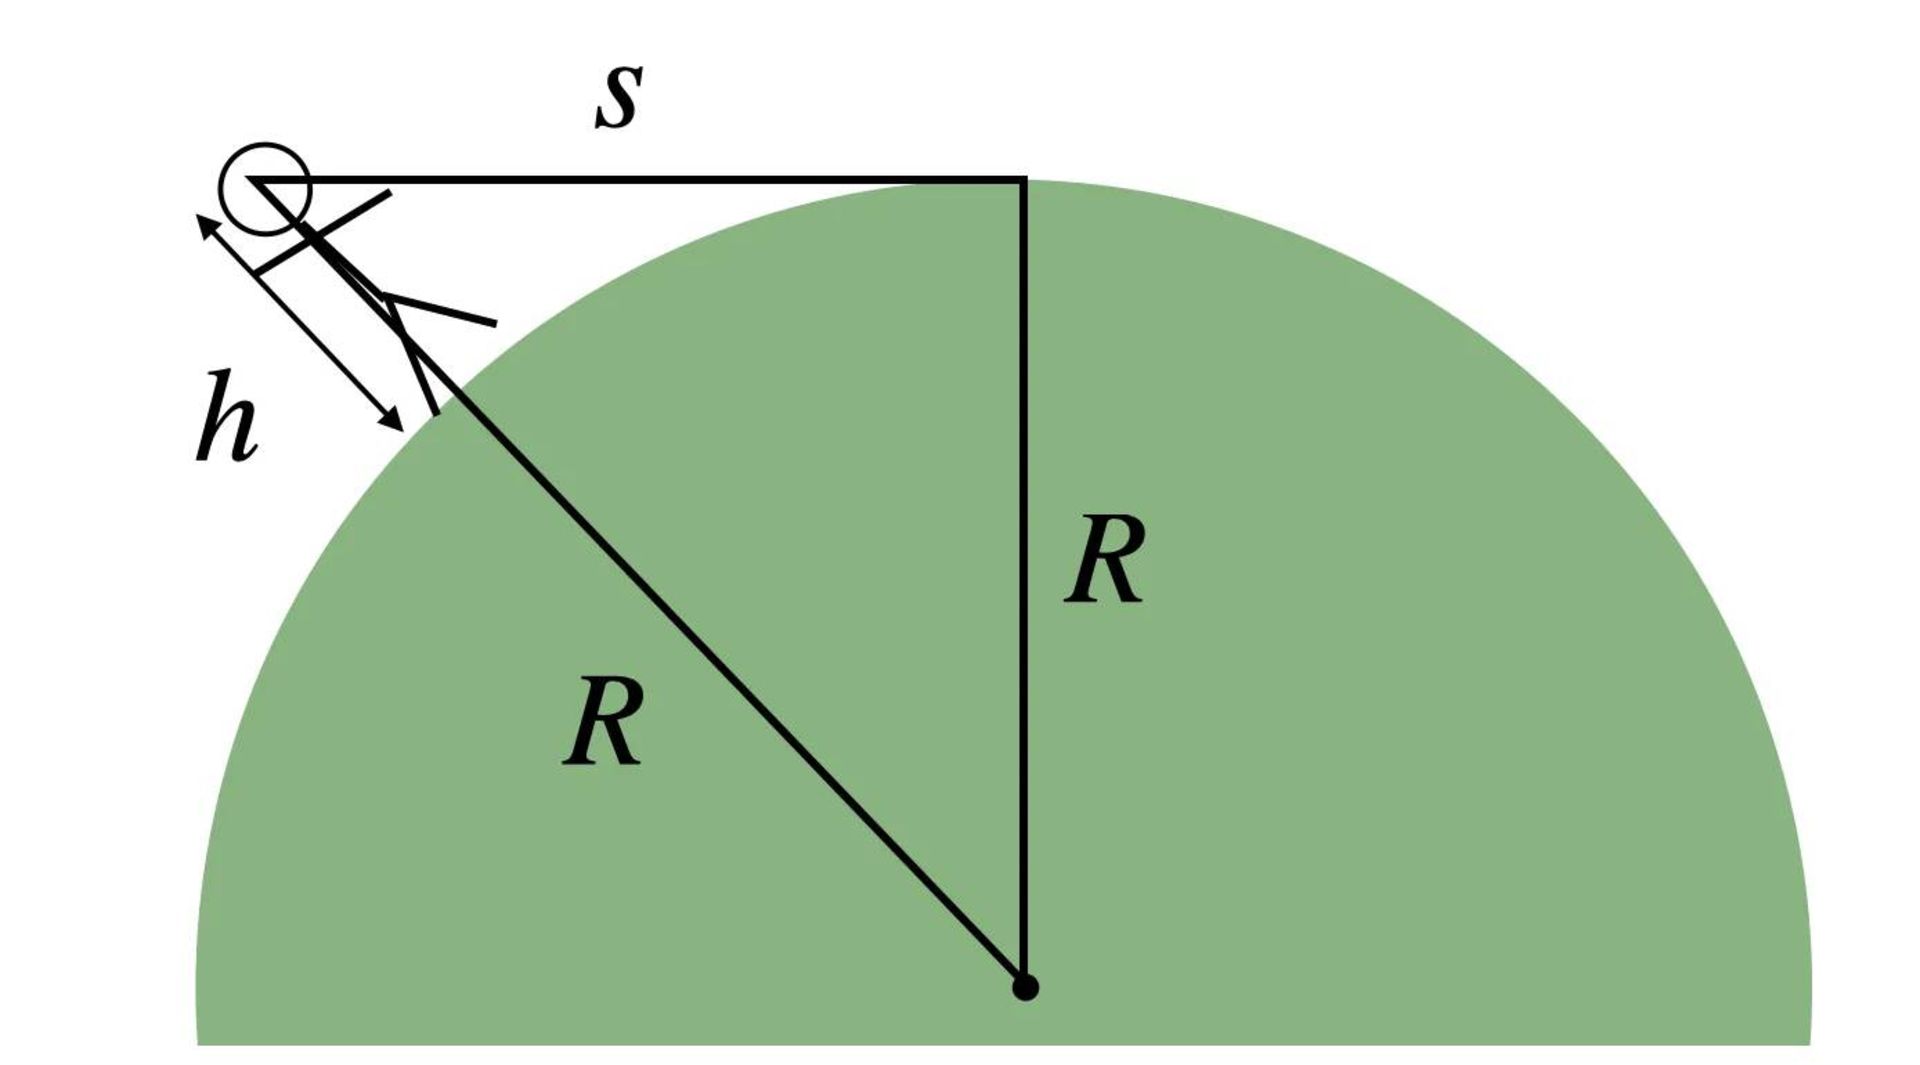 دیاگرام مثلث قائم الزاویه